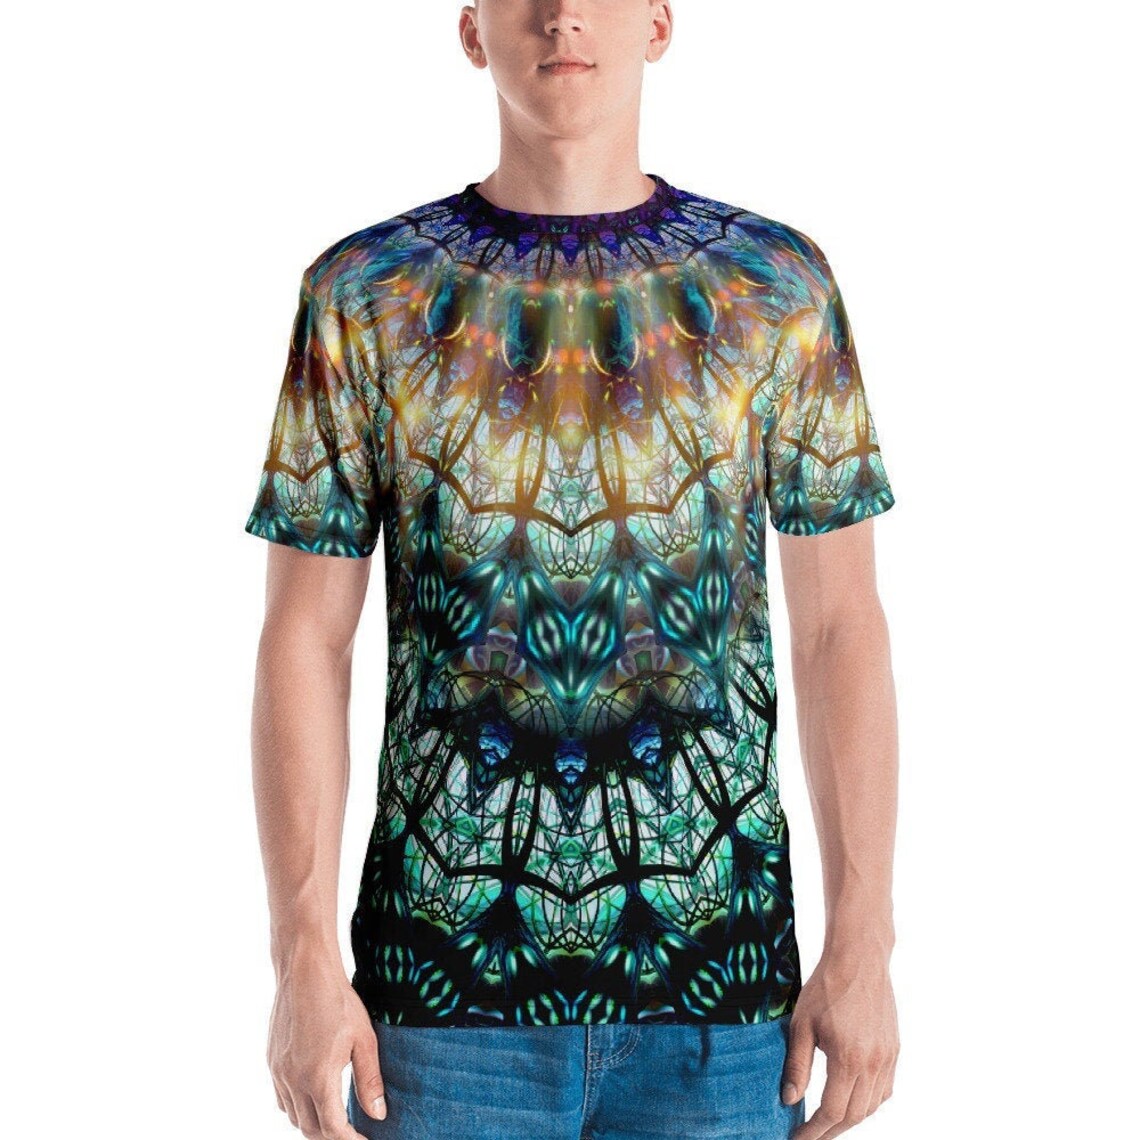 Trippy Shirt Psychedelic Clothing Mens Rave Edm Techno | Etsy